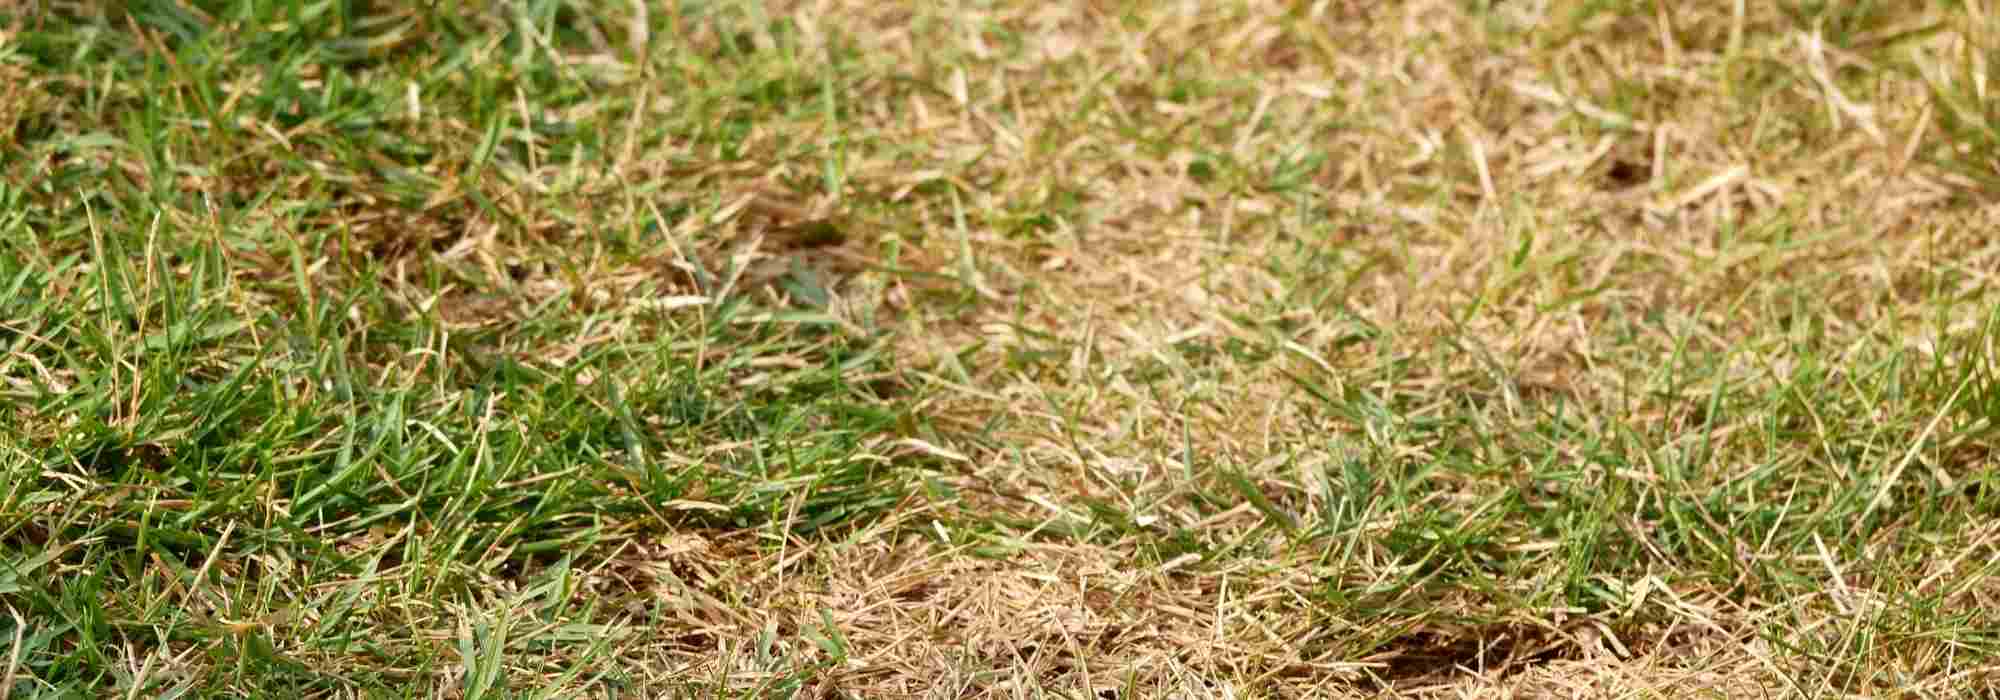 Entretenir la pelouse en cas de canicule